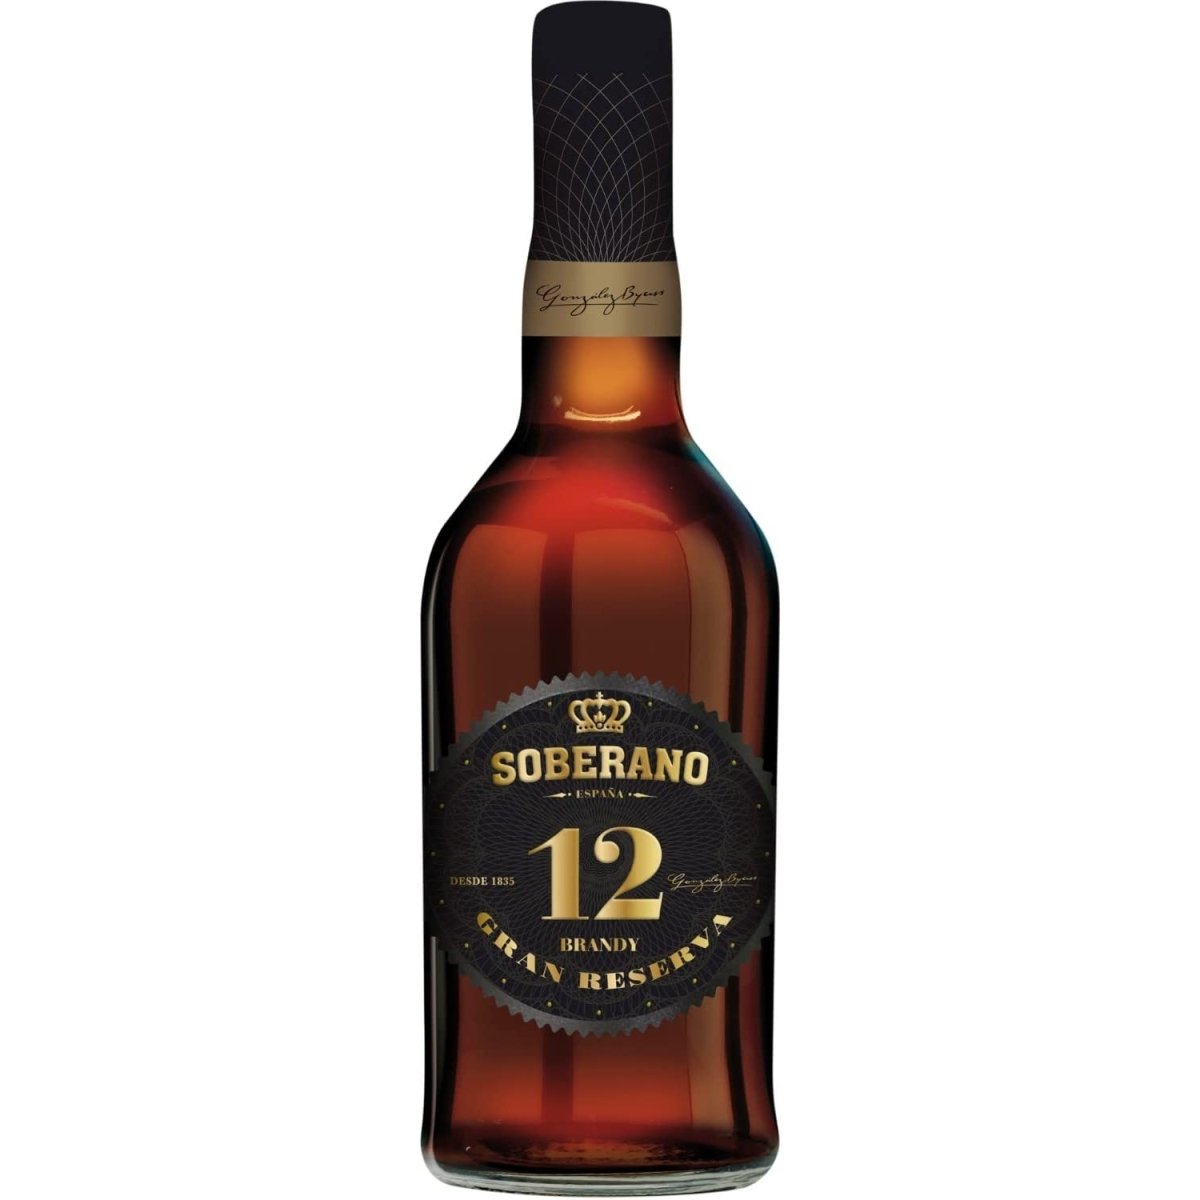 González Byass Soberano Solera Reserva 12 Jahre Brandy süß Jerez Spanien (2 Flaschen) - Versanel -